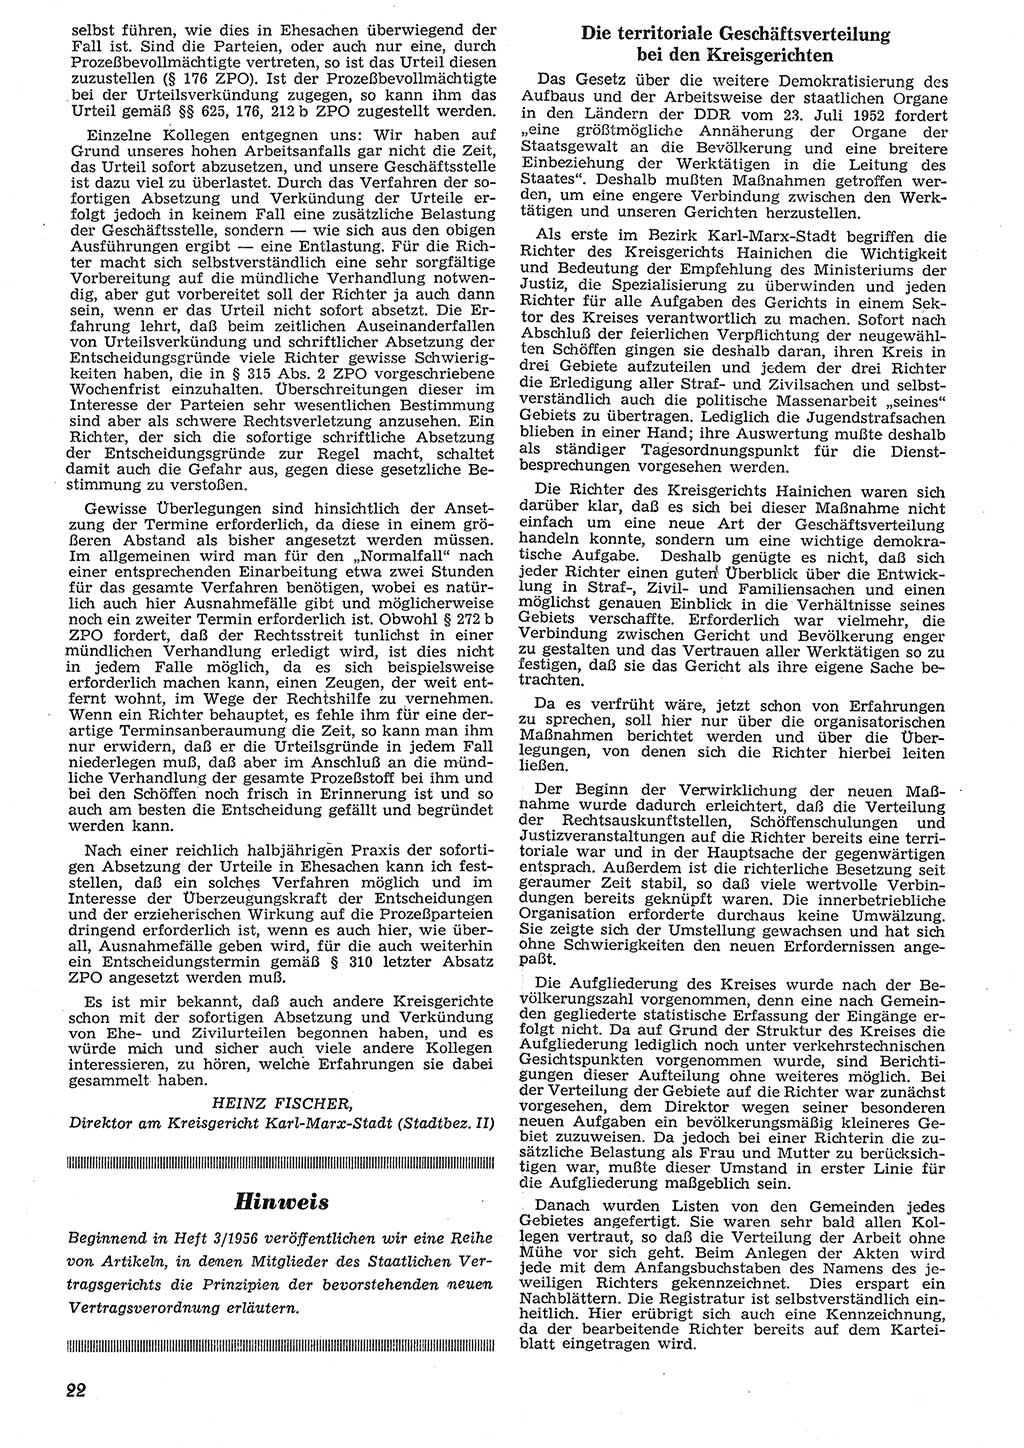 Neue Justiz (NJ), Zeitschrift für Recht und Rechtswissenschaft [Deutsche Demokratische Republik (DDR)], 10. Jahrgang 1956, Seite 22 (NJ DDR 1956, S. 22)